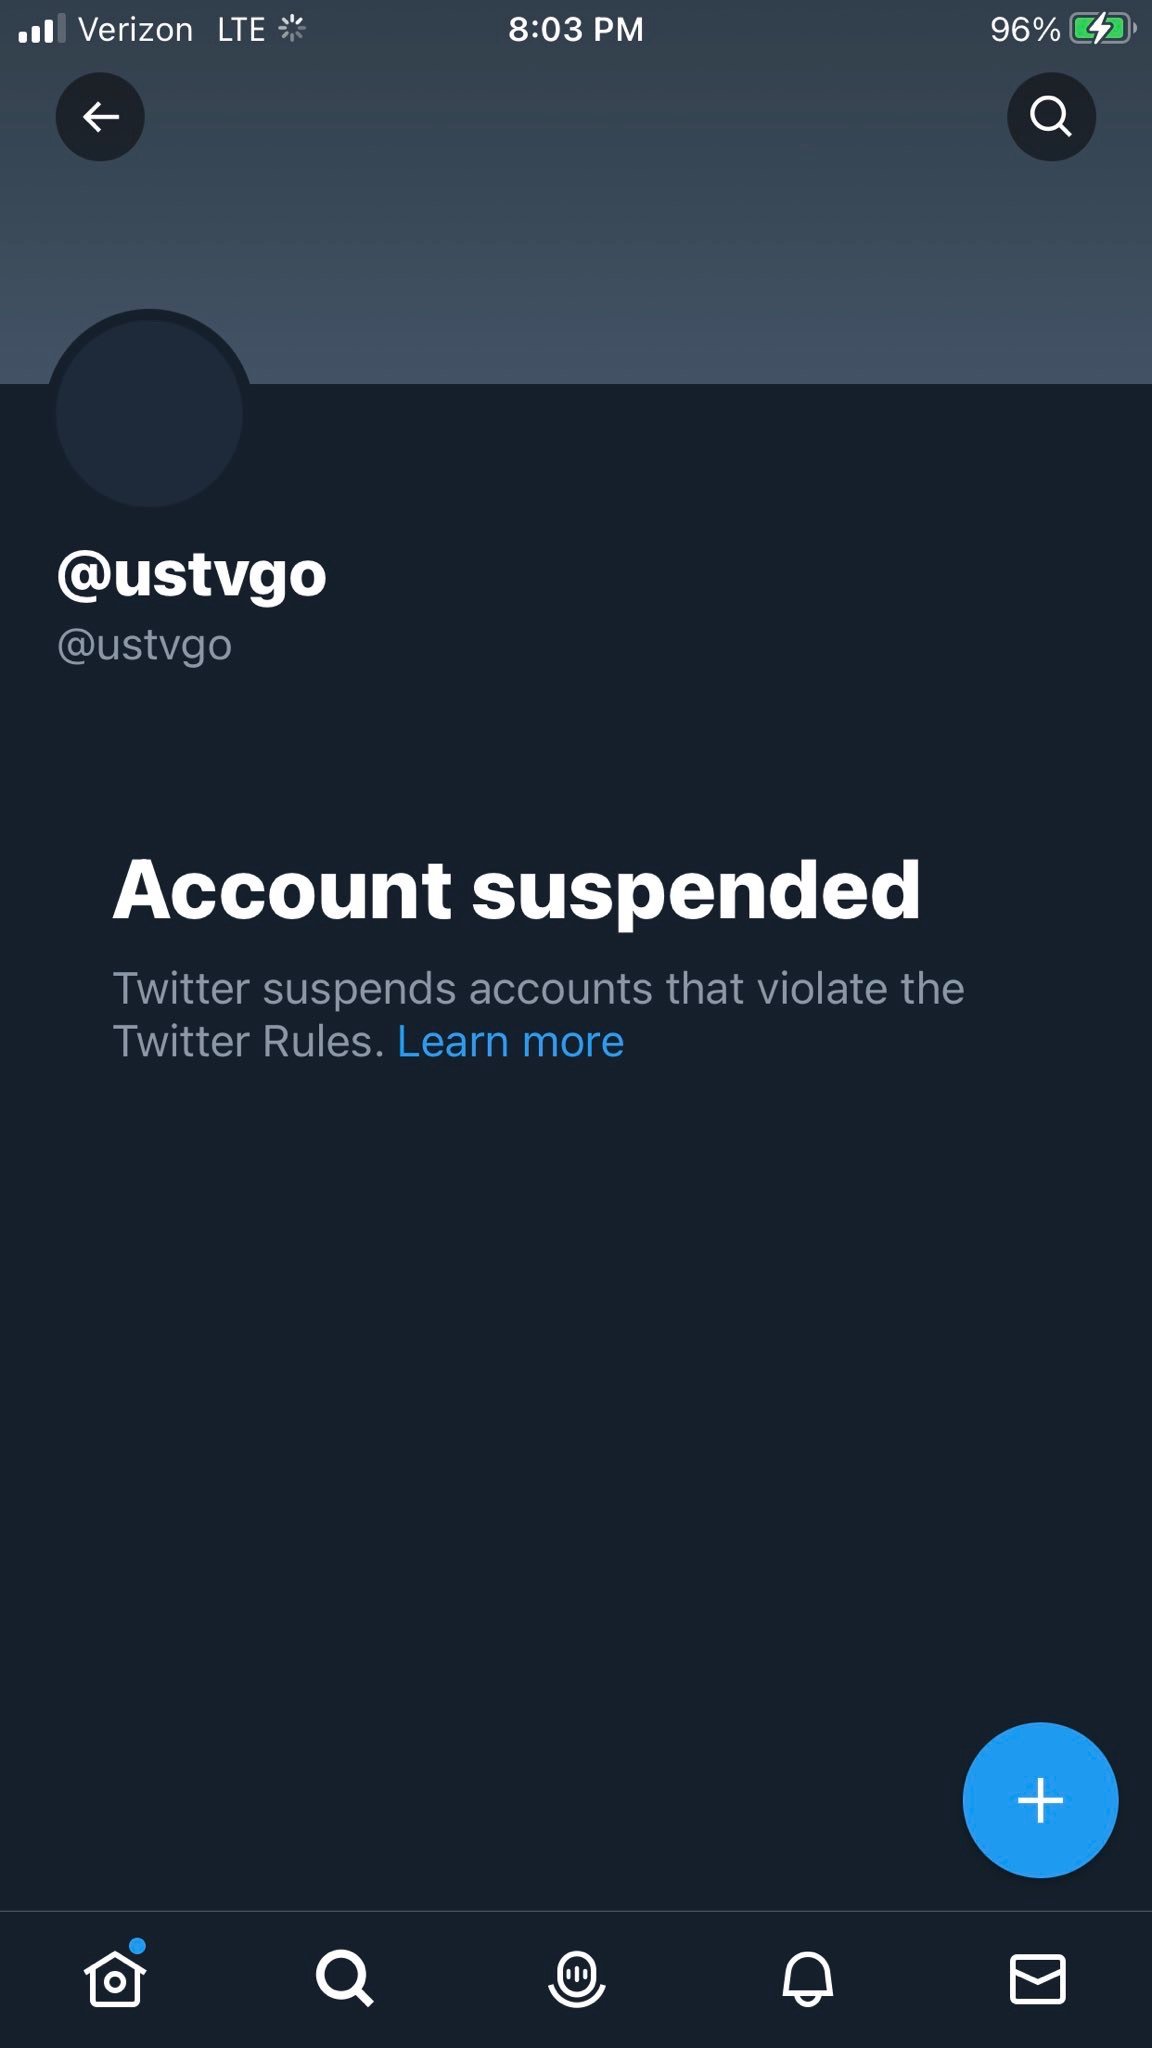 USTVGO Twitter Suspended